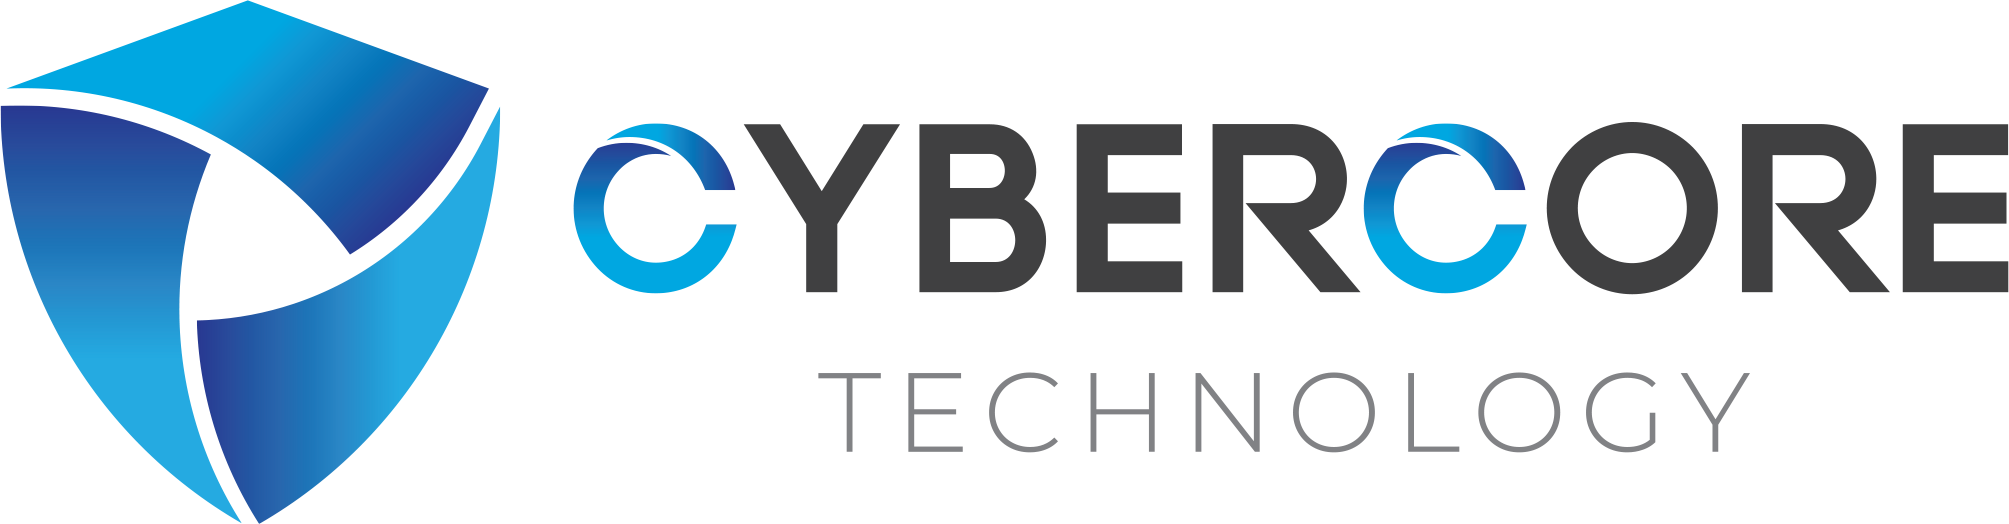 cybercore footer logo